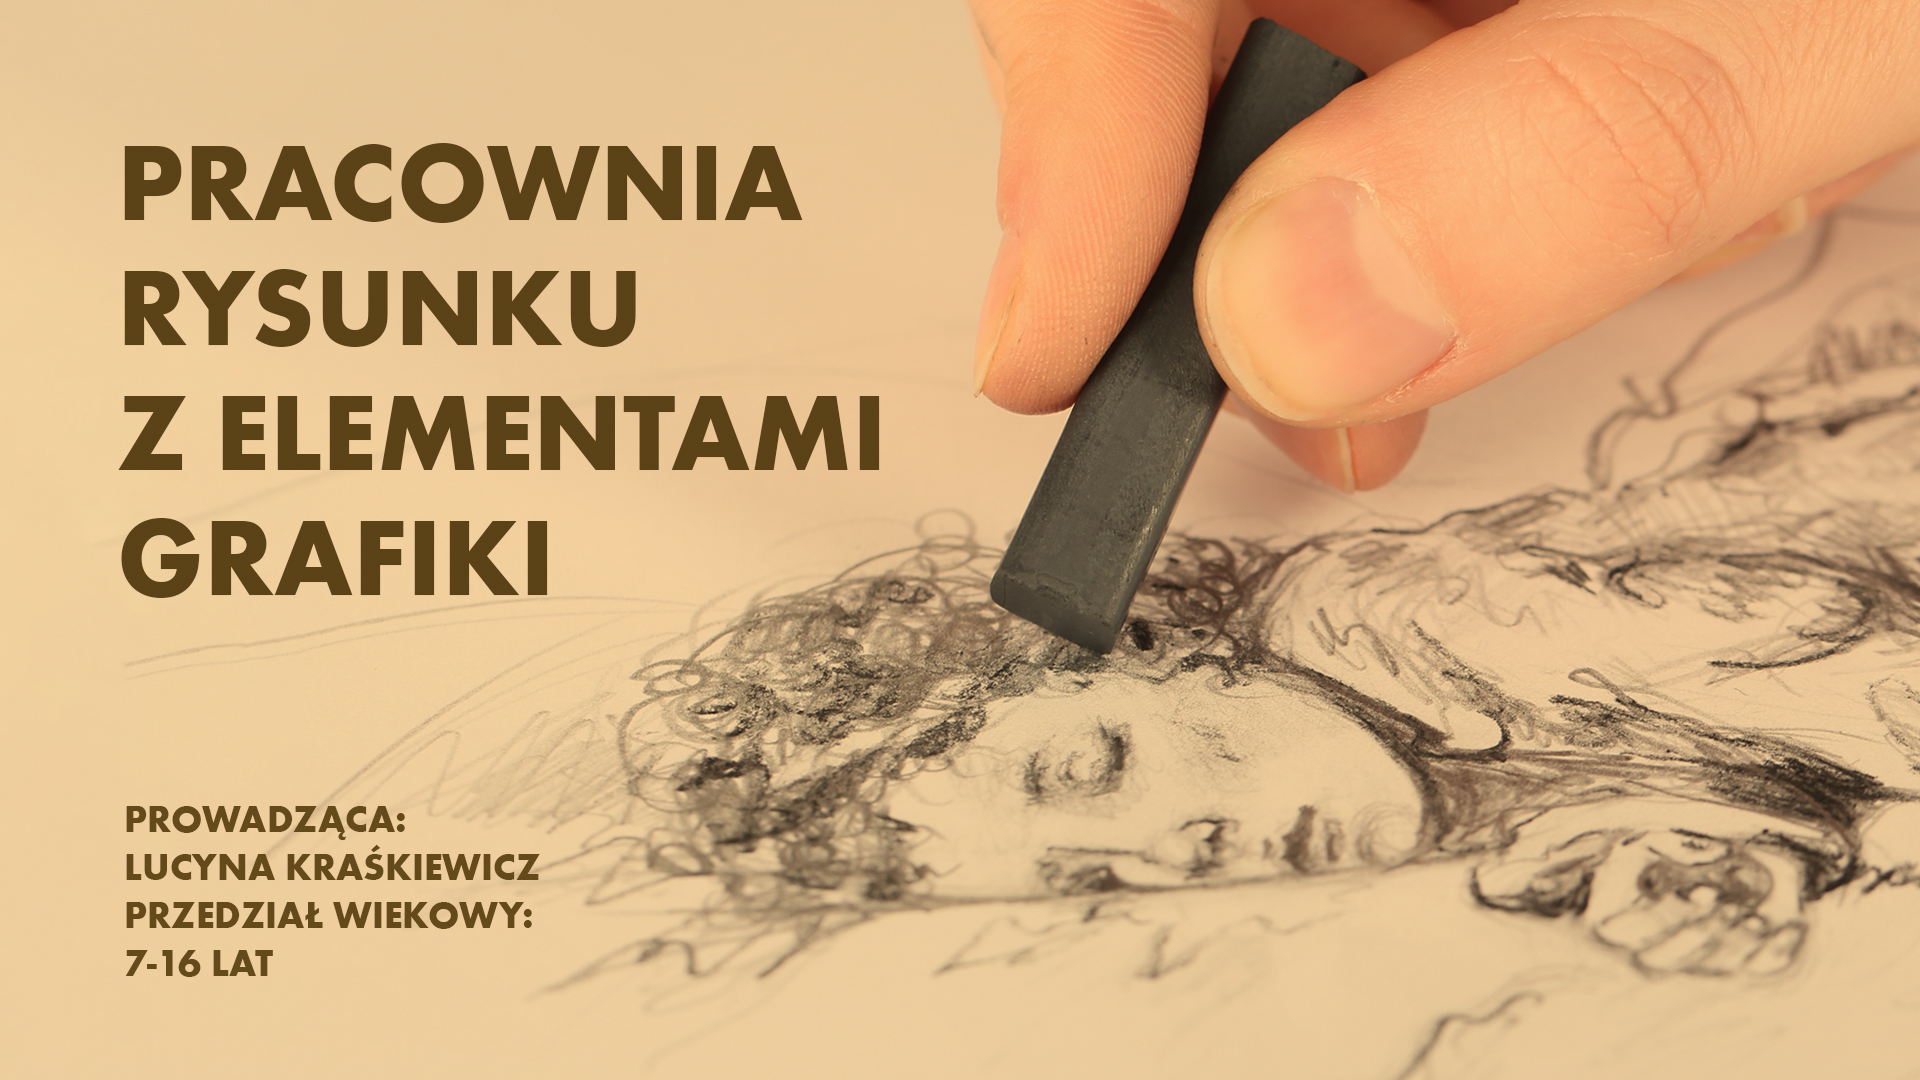 Pracownia rysunku z elementami grafiki Lucyna Kraśkiewicz